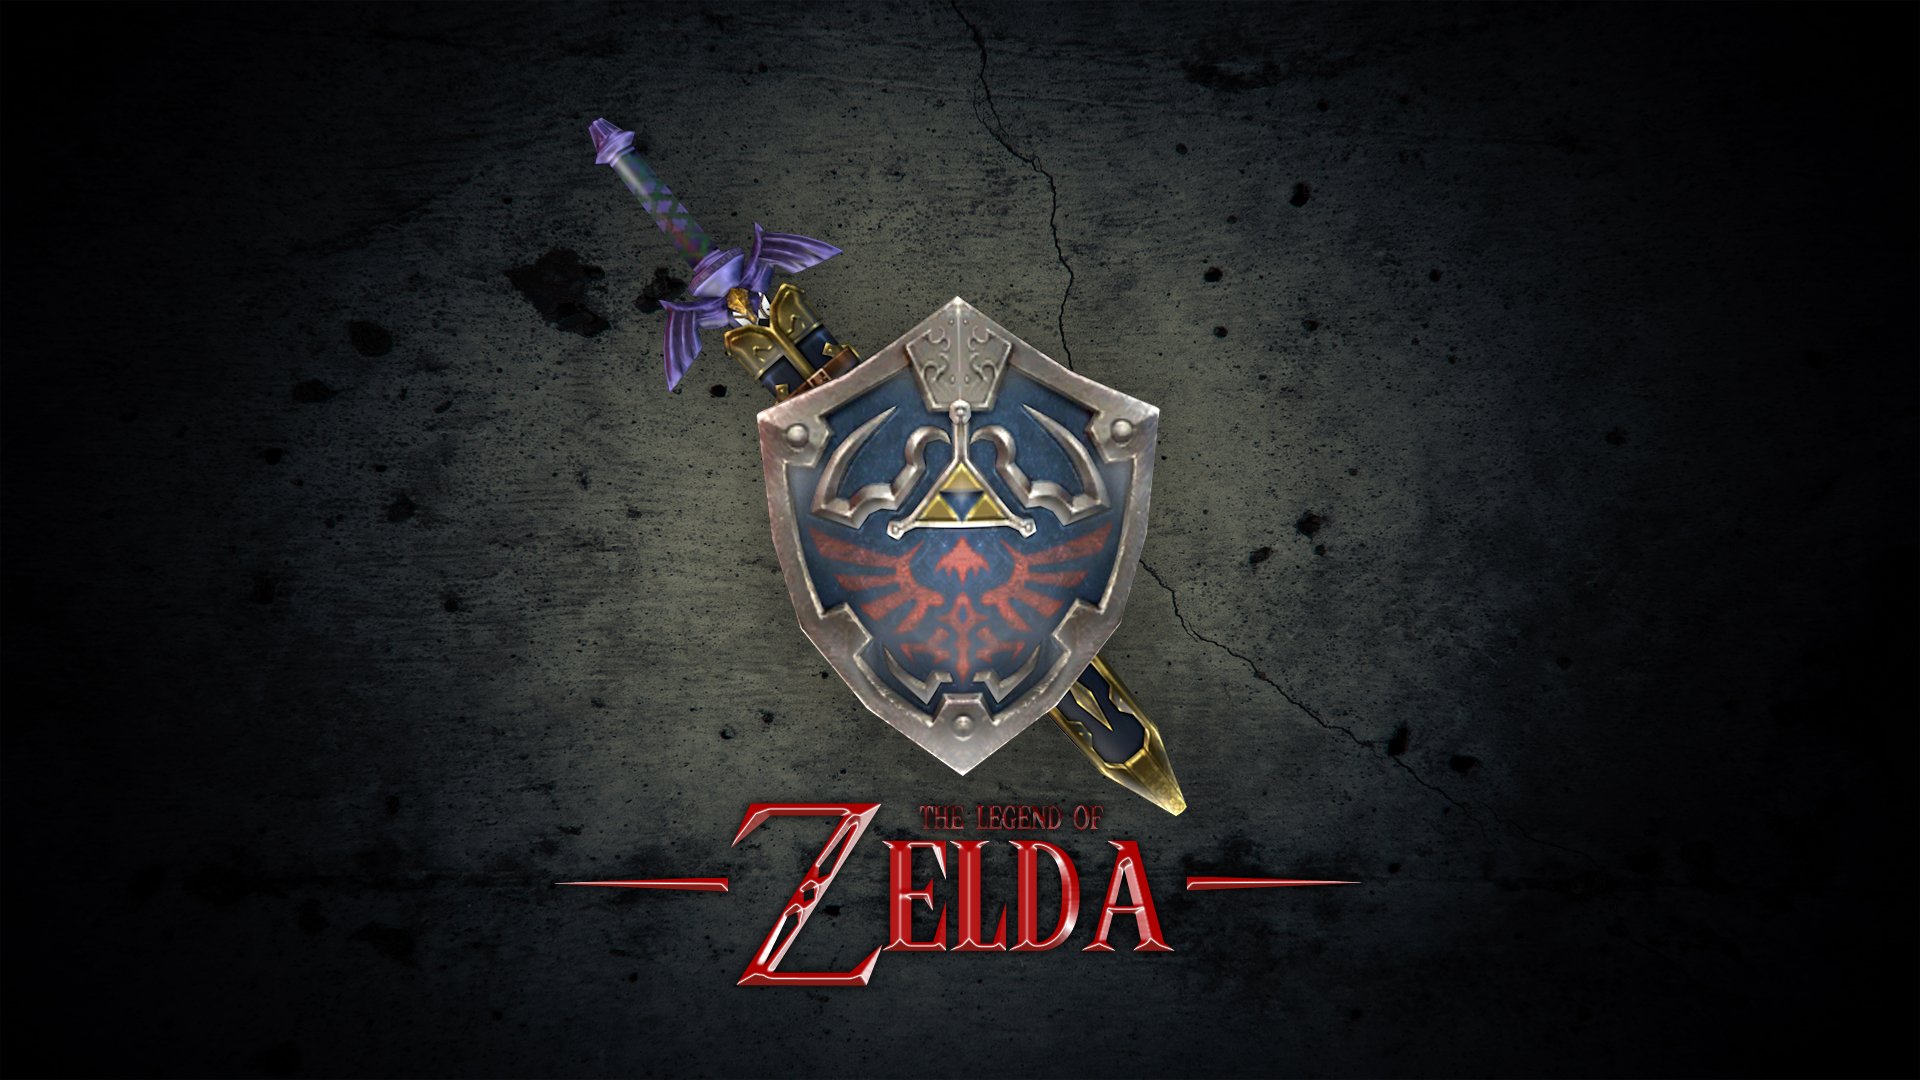  The Legends Of Zelda Swords Logo HD Wallpapers 1080x1920Px XzmUQc13